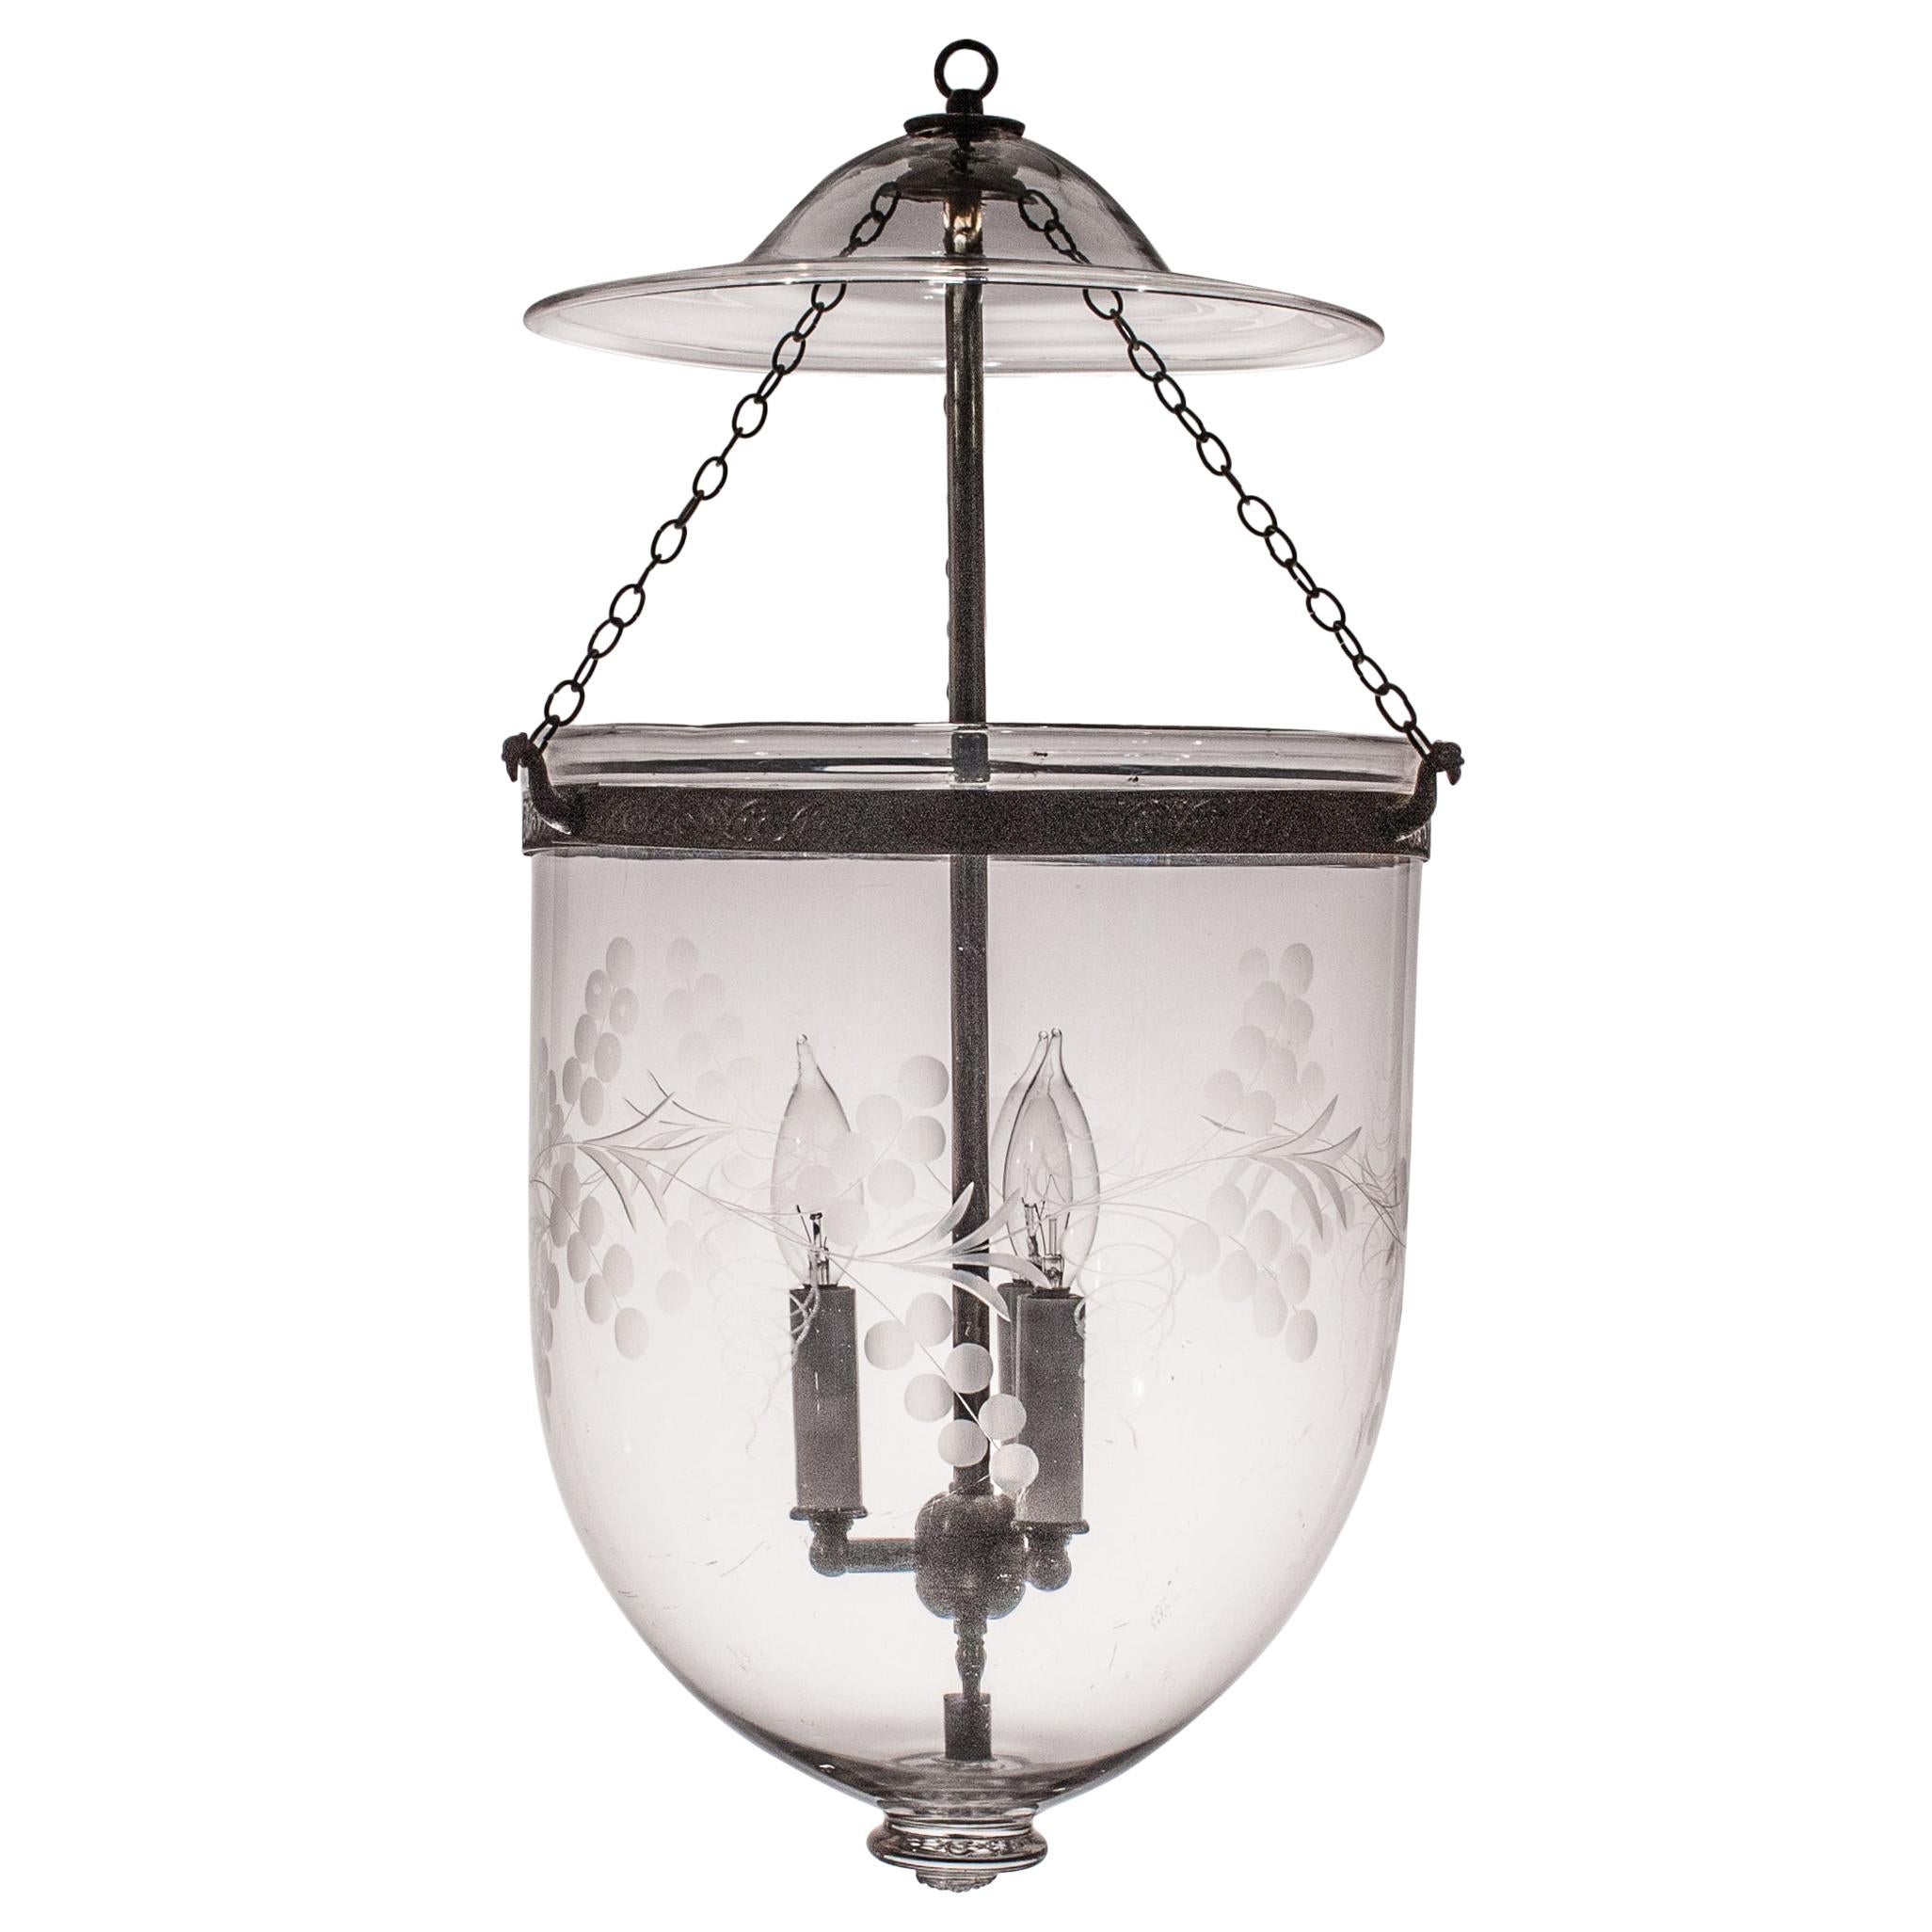 Antique Bell Jar Lantern with Vine Etching